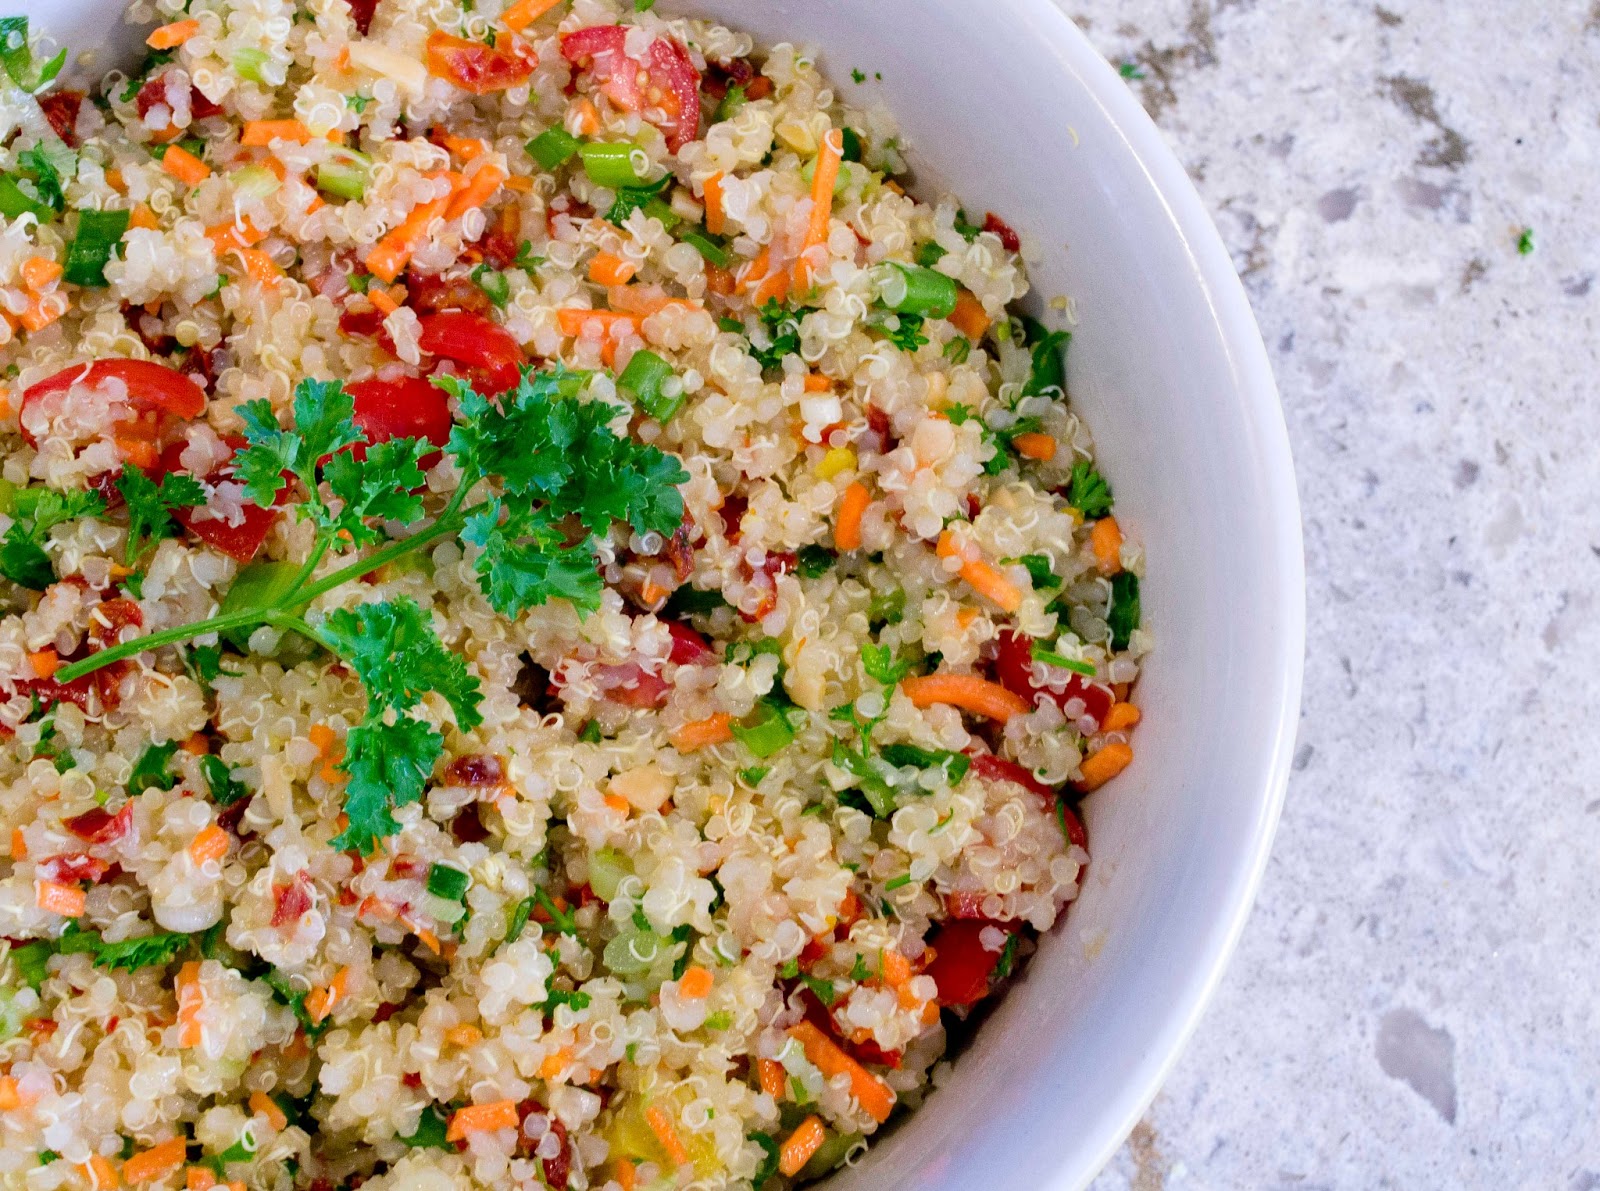 Quale ricetta con la quinoa preferite?